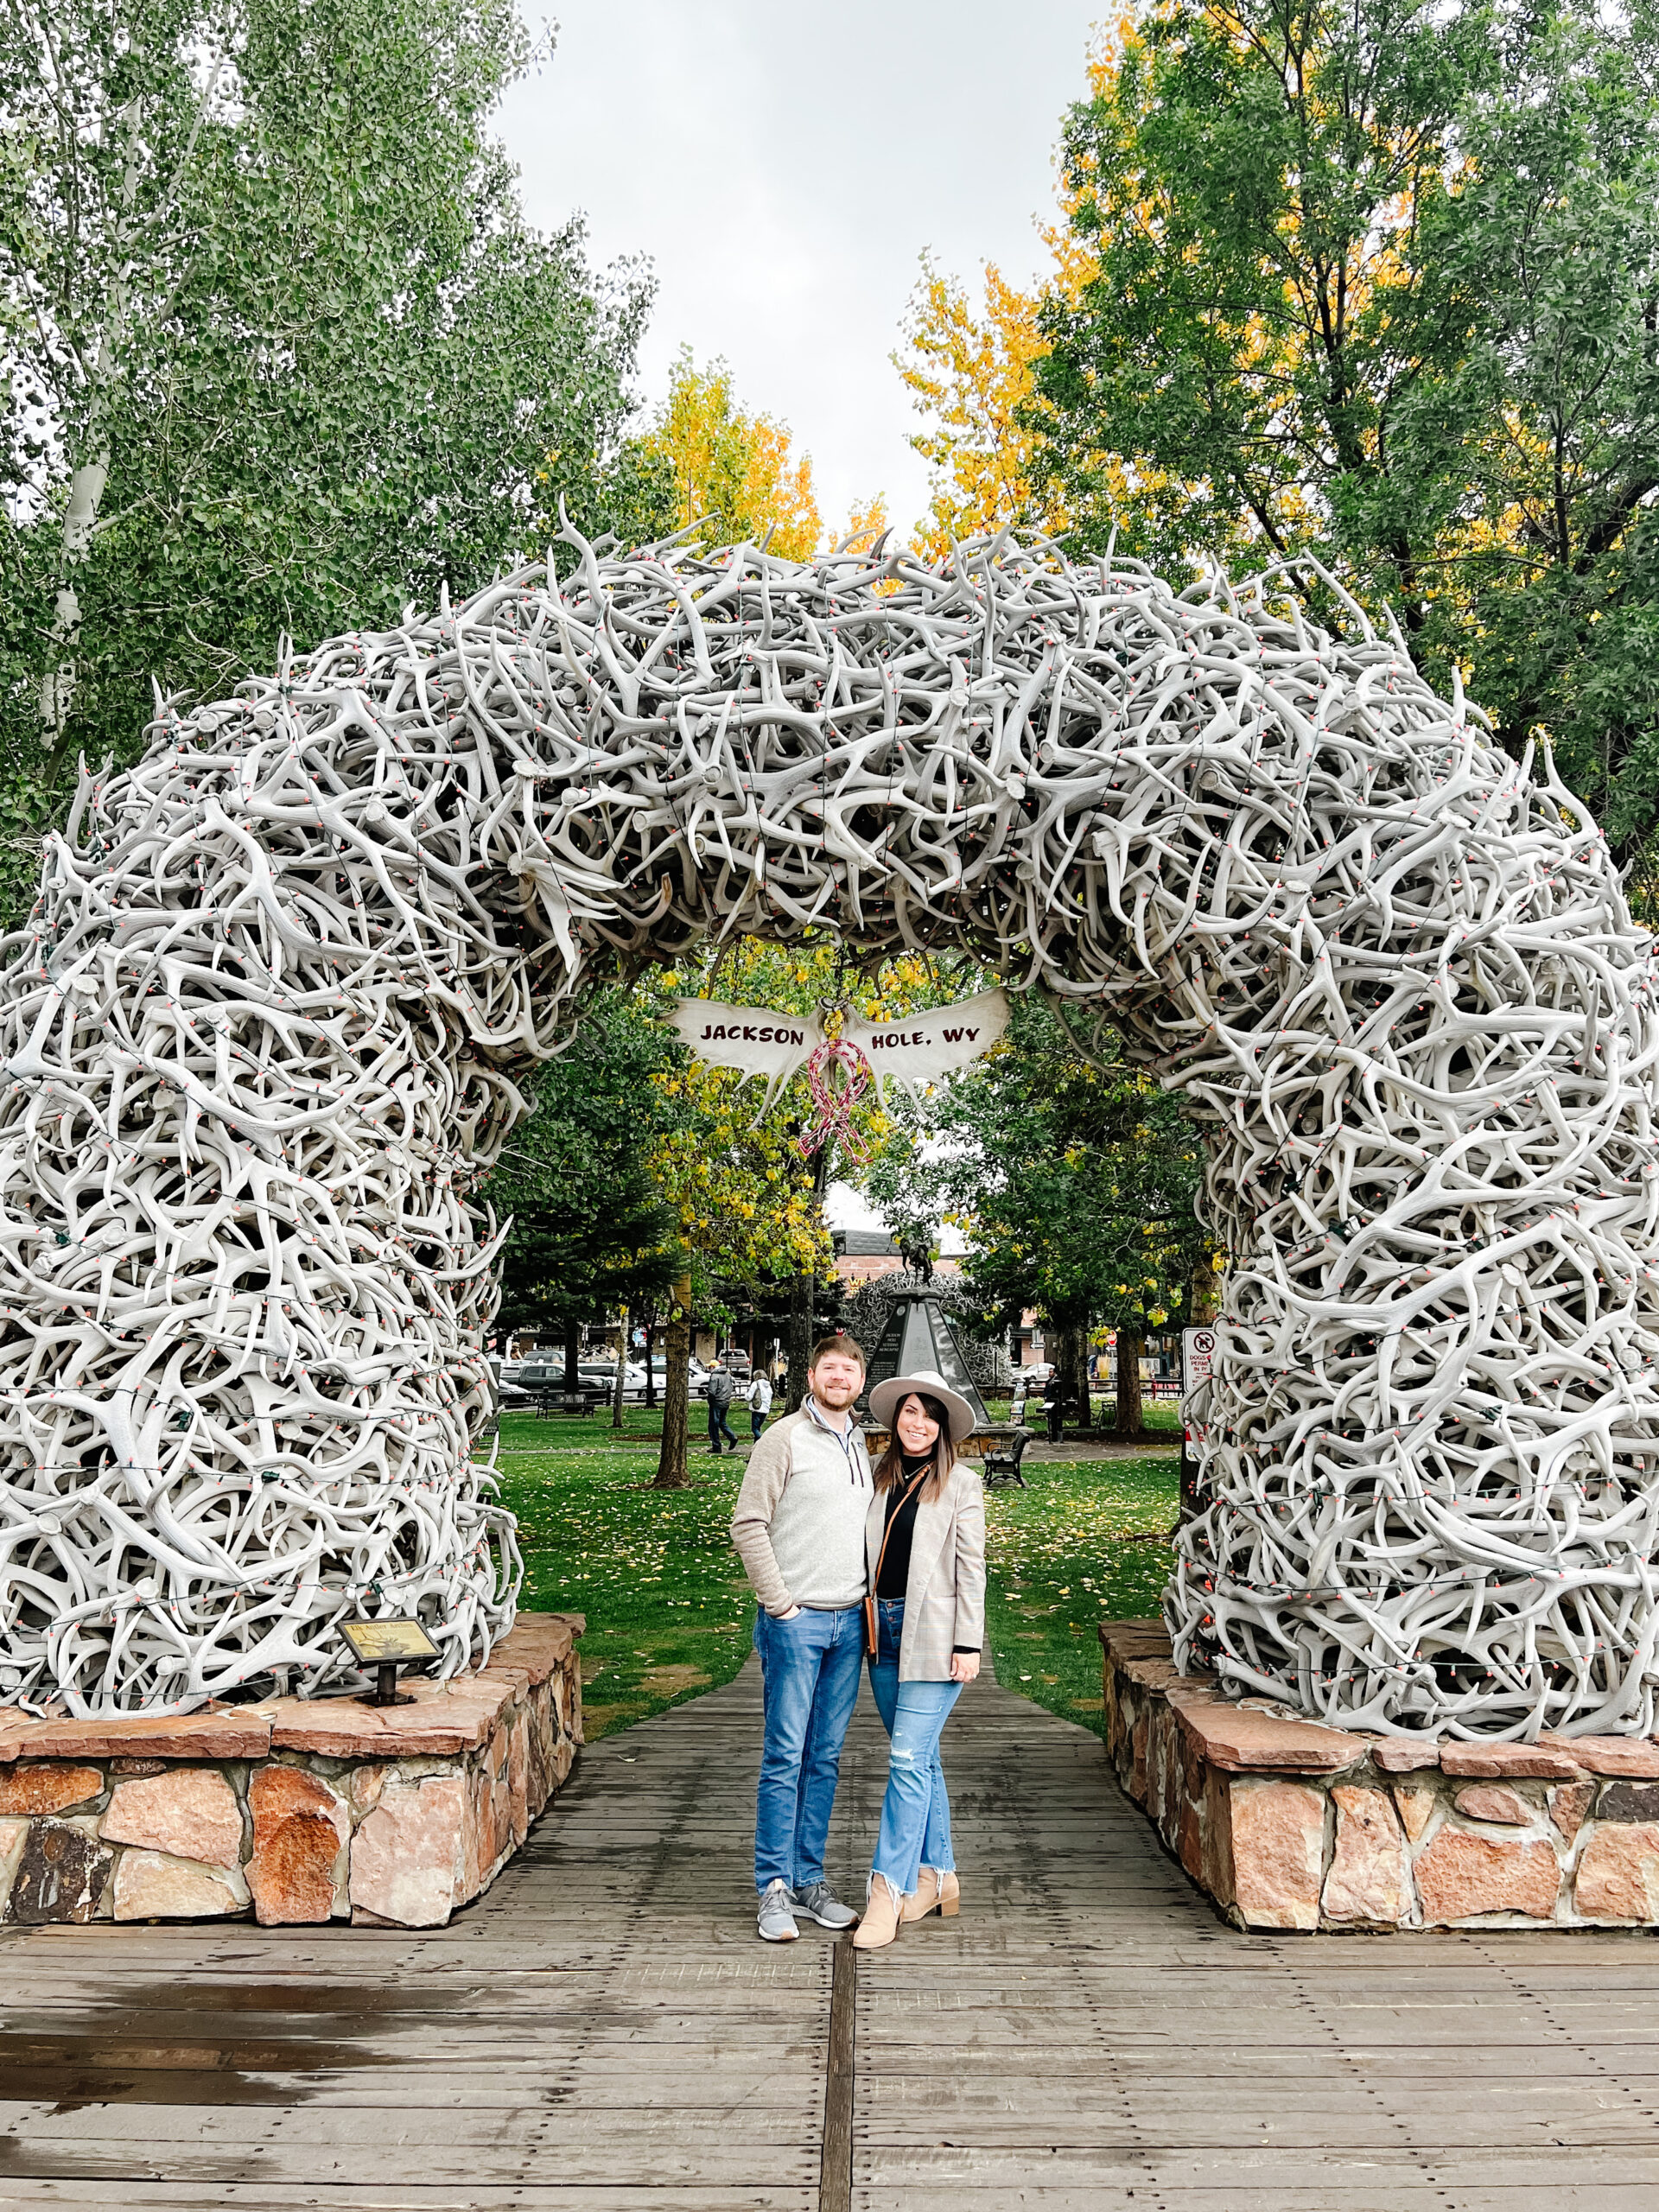 Jackson Square Elk Antler Arch, John and Brittney Naylor standing together underneath, Jackson Hole in September